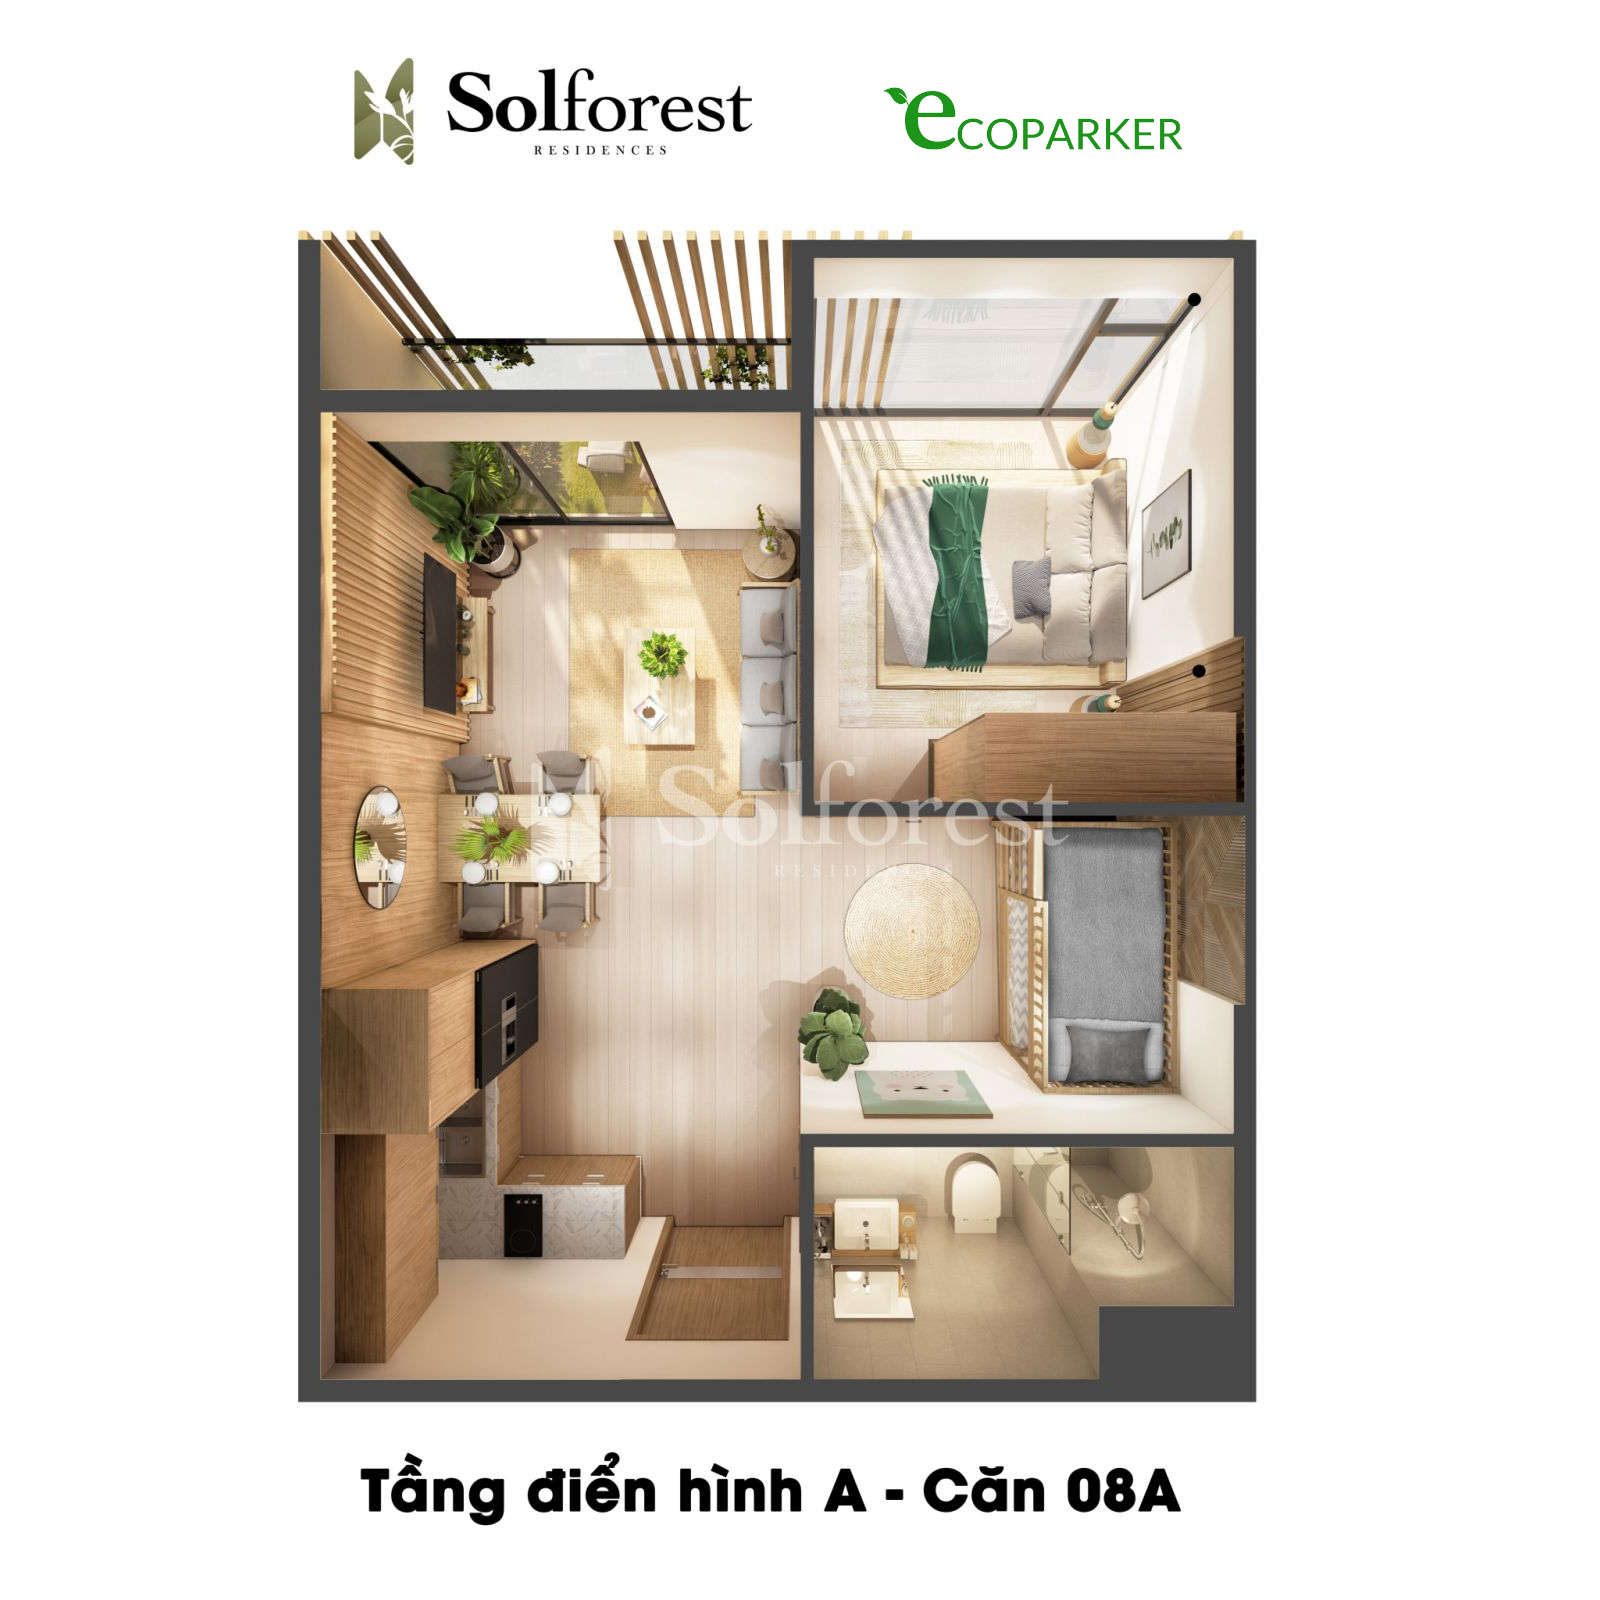 Hình ảnh căn hộ Solforest đem lại cho bạn một cảm giác ấm cúng, hiện đại và tinh tế. Hãy khám phá và lựa chọn không gian sống hoàn hảo cho bạn với hình ảnh căn hộ Solforest.